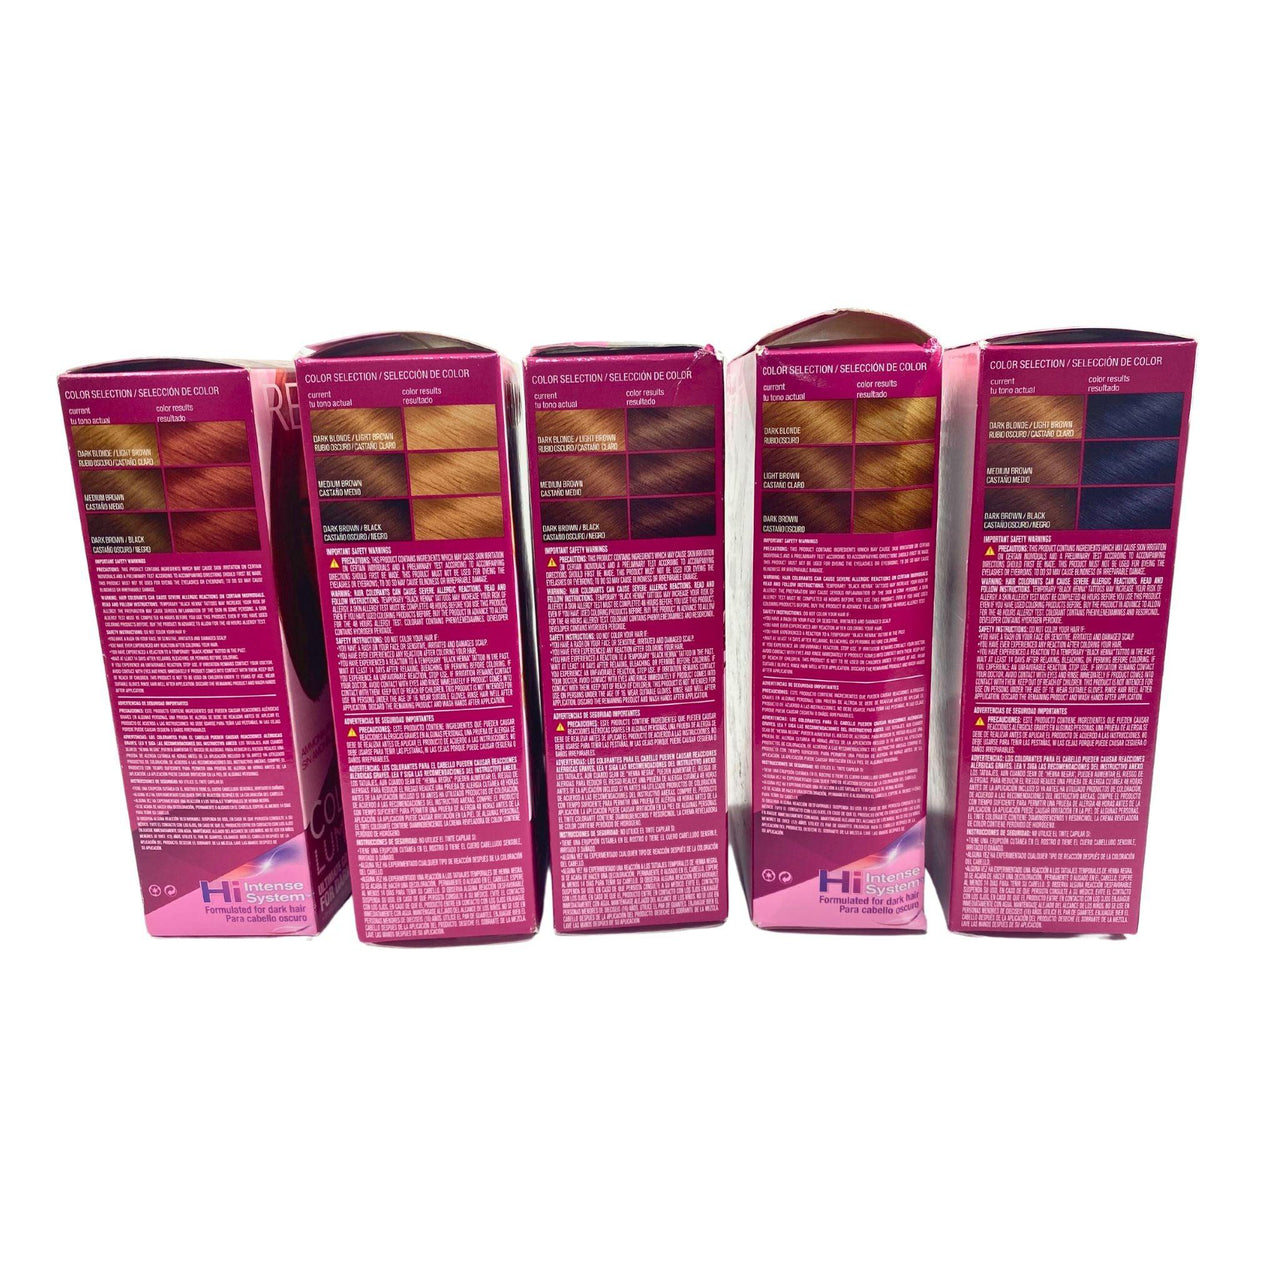 Revlon ColorSilk Luminista Haircolor Assorted Colors (36 Pcs Lot) - Discount Wholesalers Inc